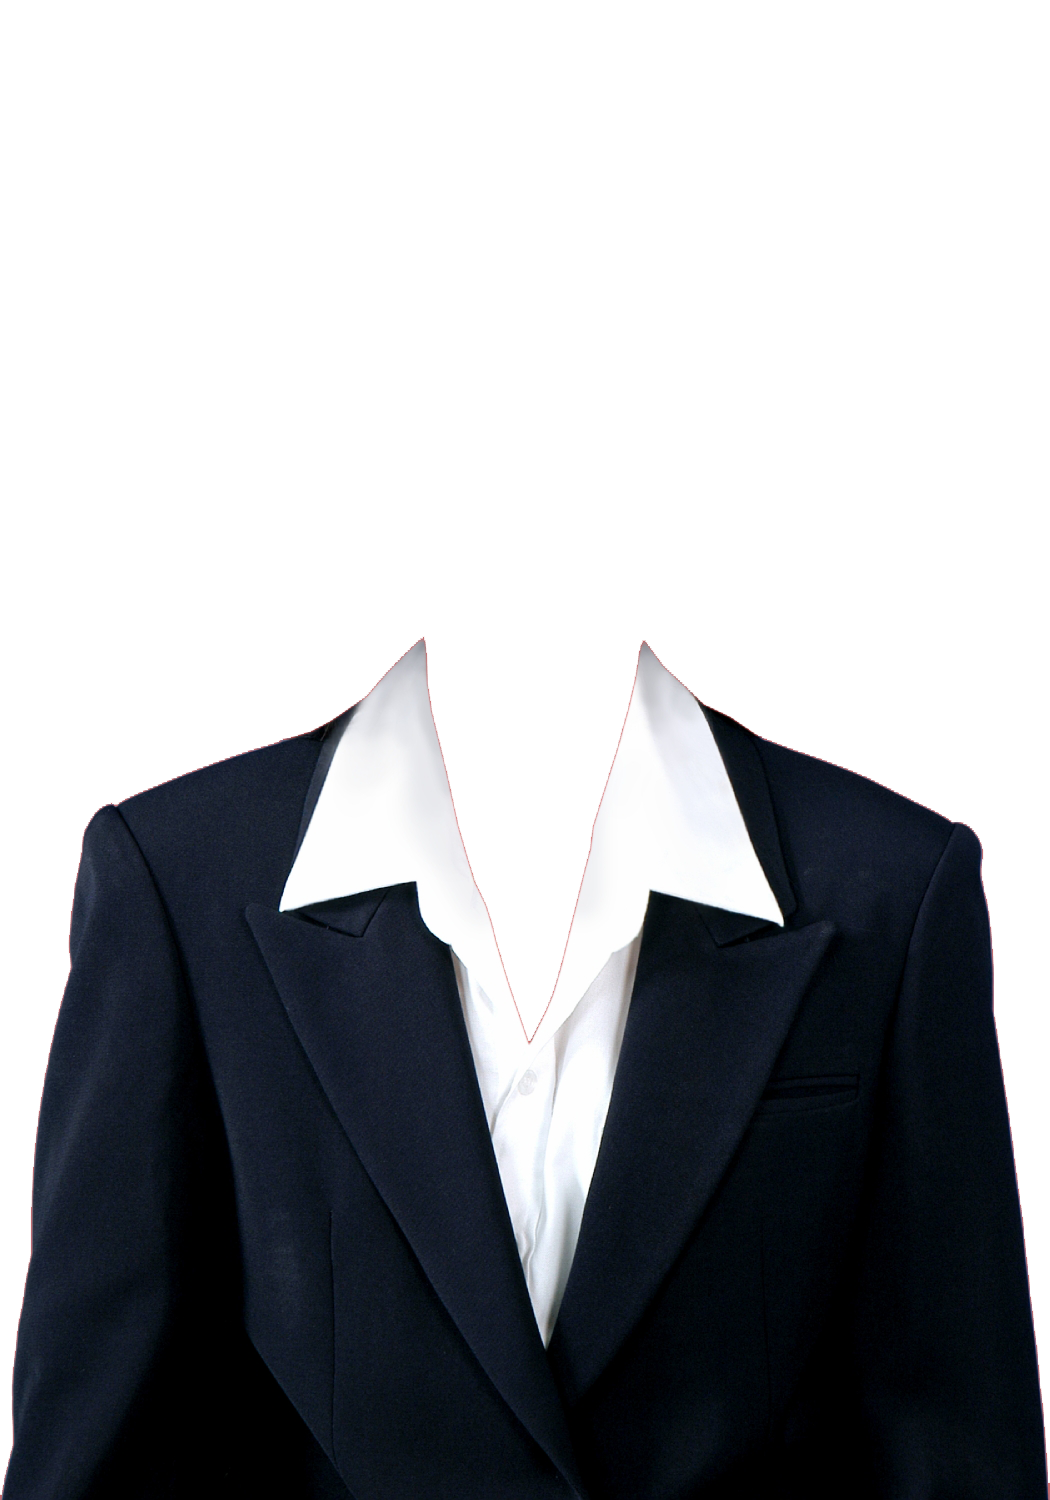 Blazer Men Suit PNG Clipart Background